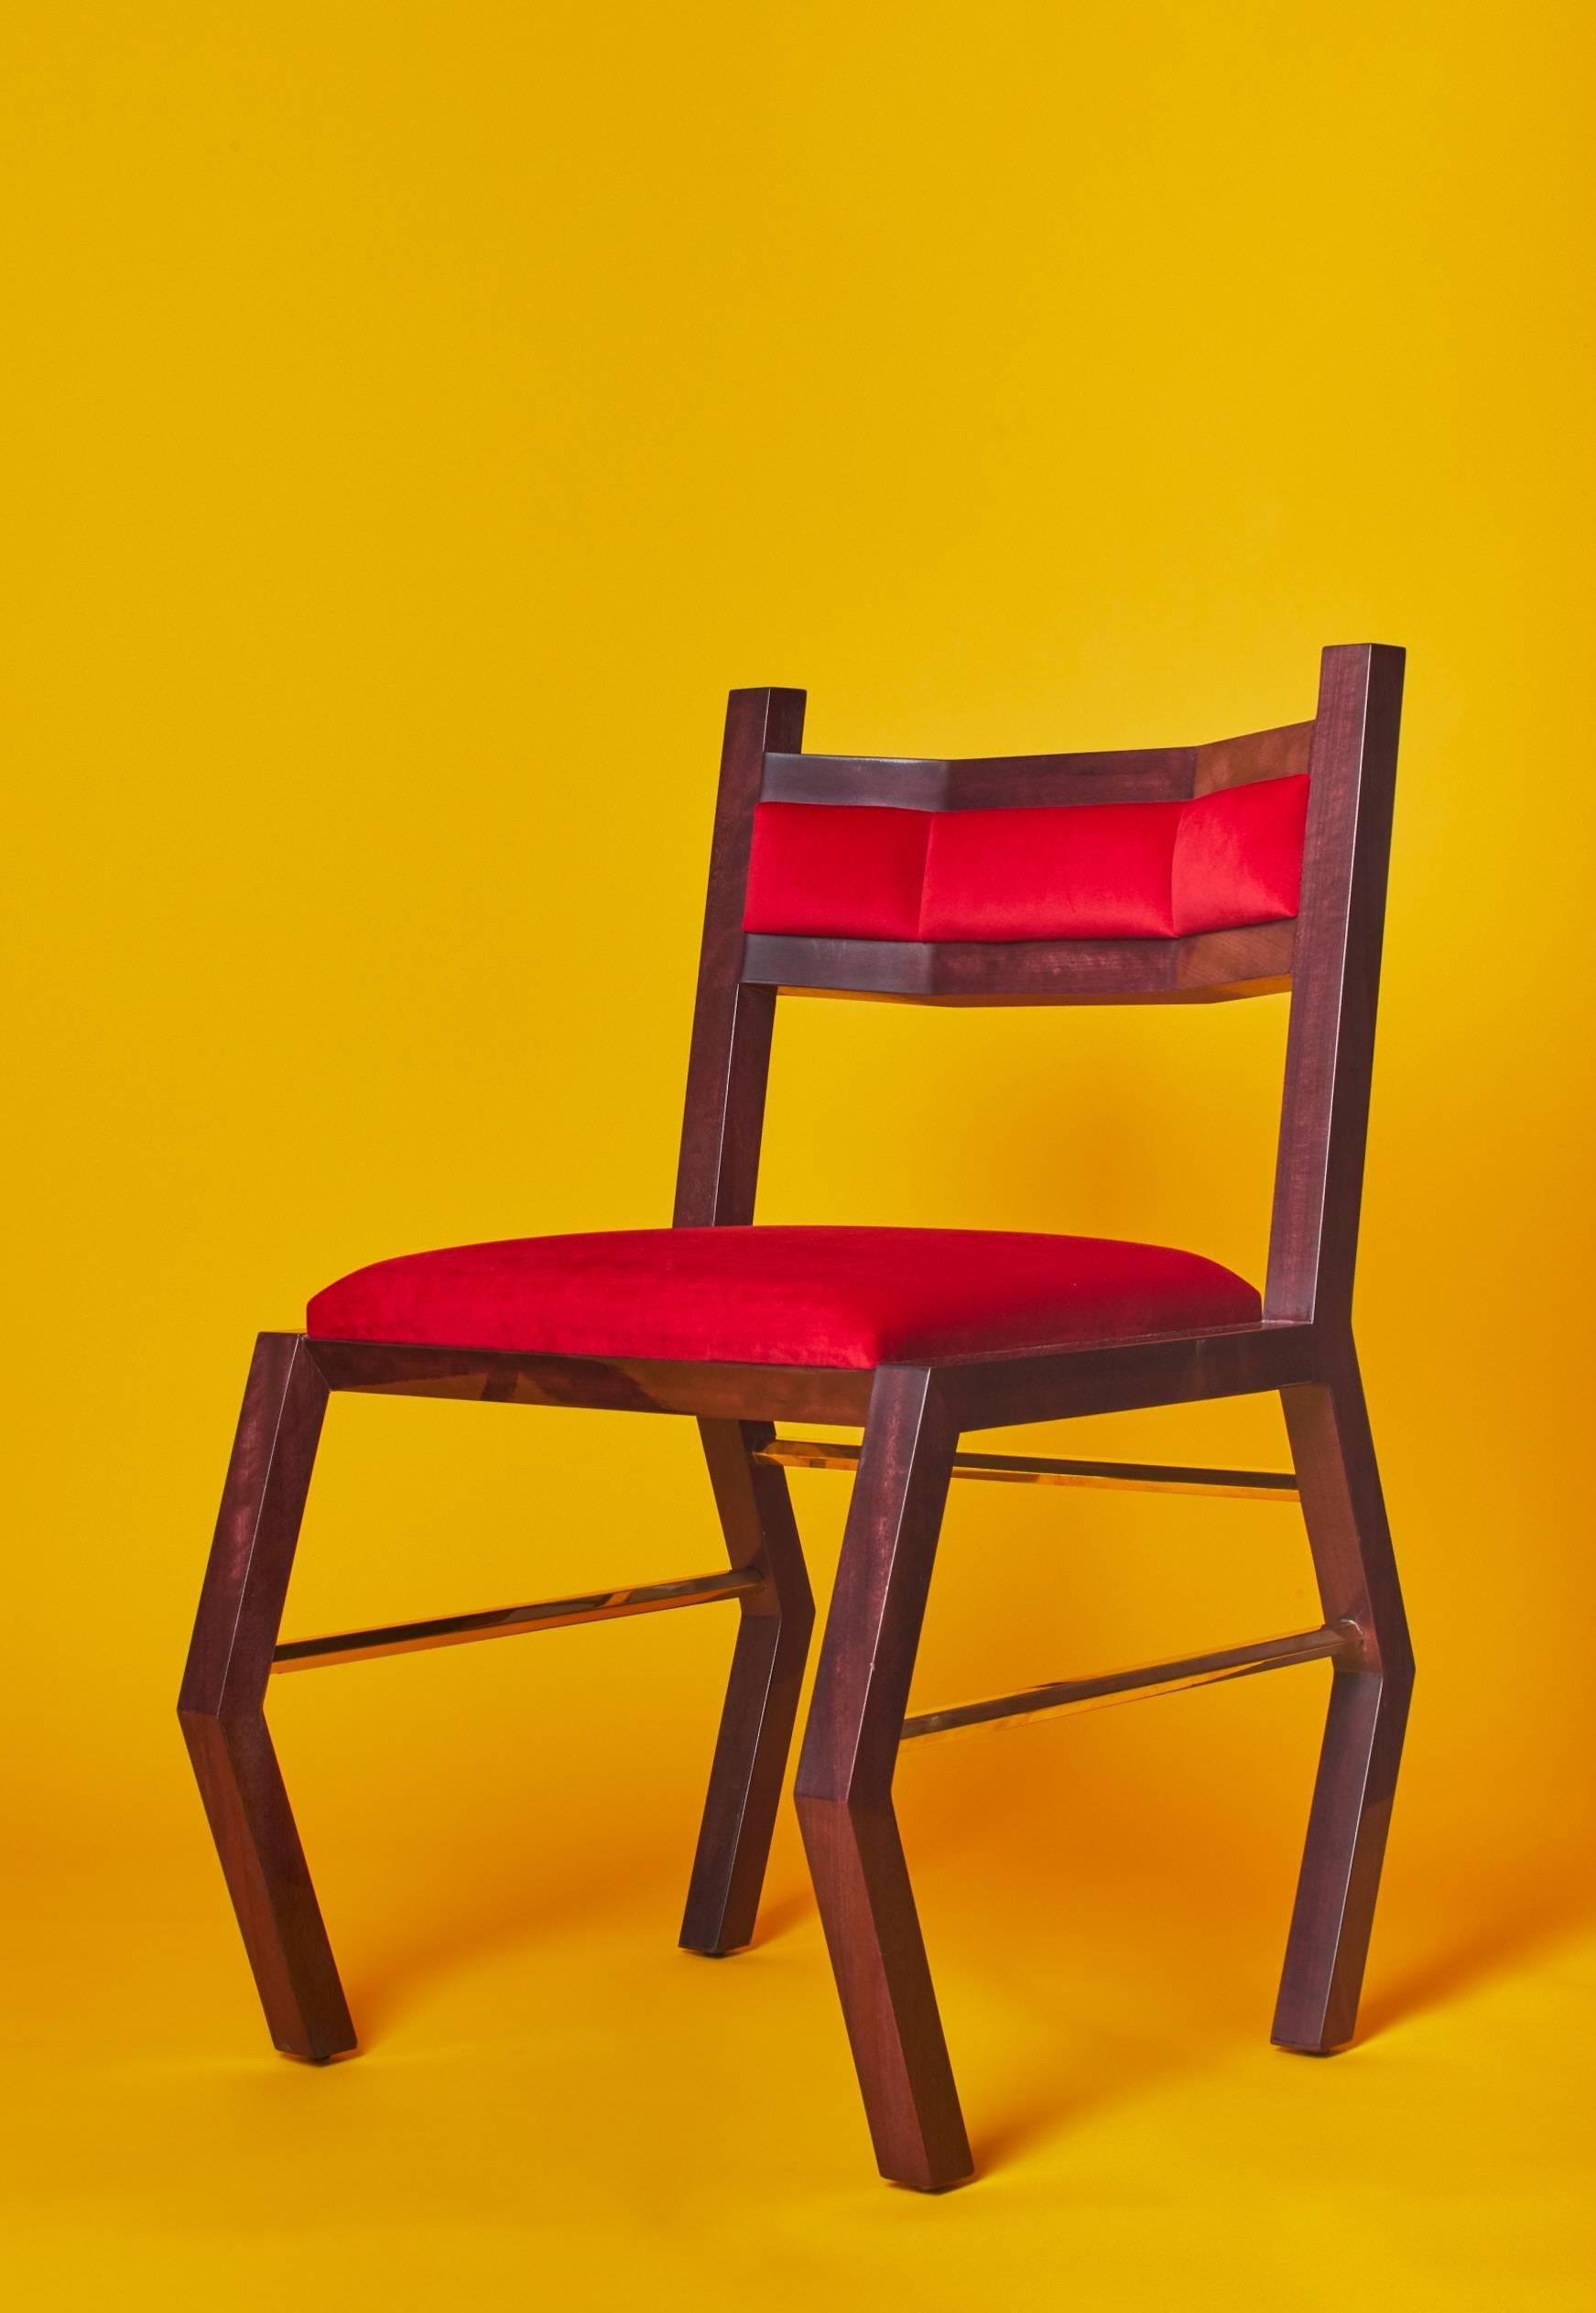 Der Hex-Stuhl wurde von Troy Smith gebaut und entworfen. Dieser zeitgemäße und zeitlose Stuhl wird aus den hochwertigsten MATERIALEN hergestellt. Dieser äußerst bequeme und sehr solide Stuhl ist nicht nur schön, sondern auch mit CNC und